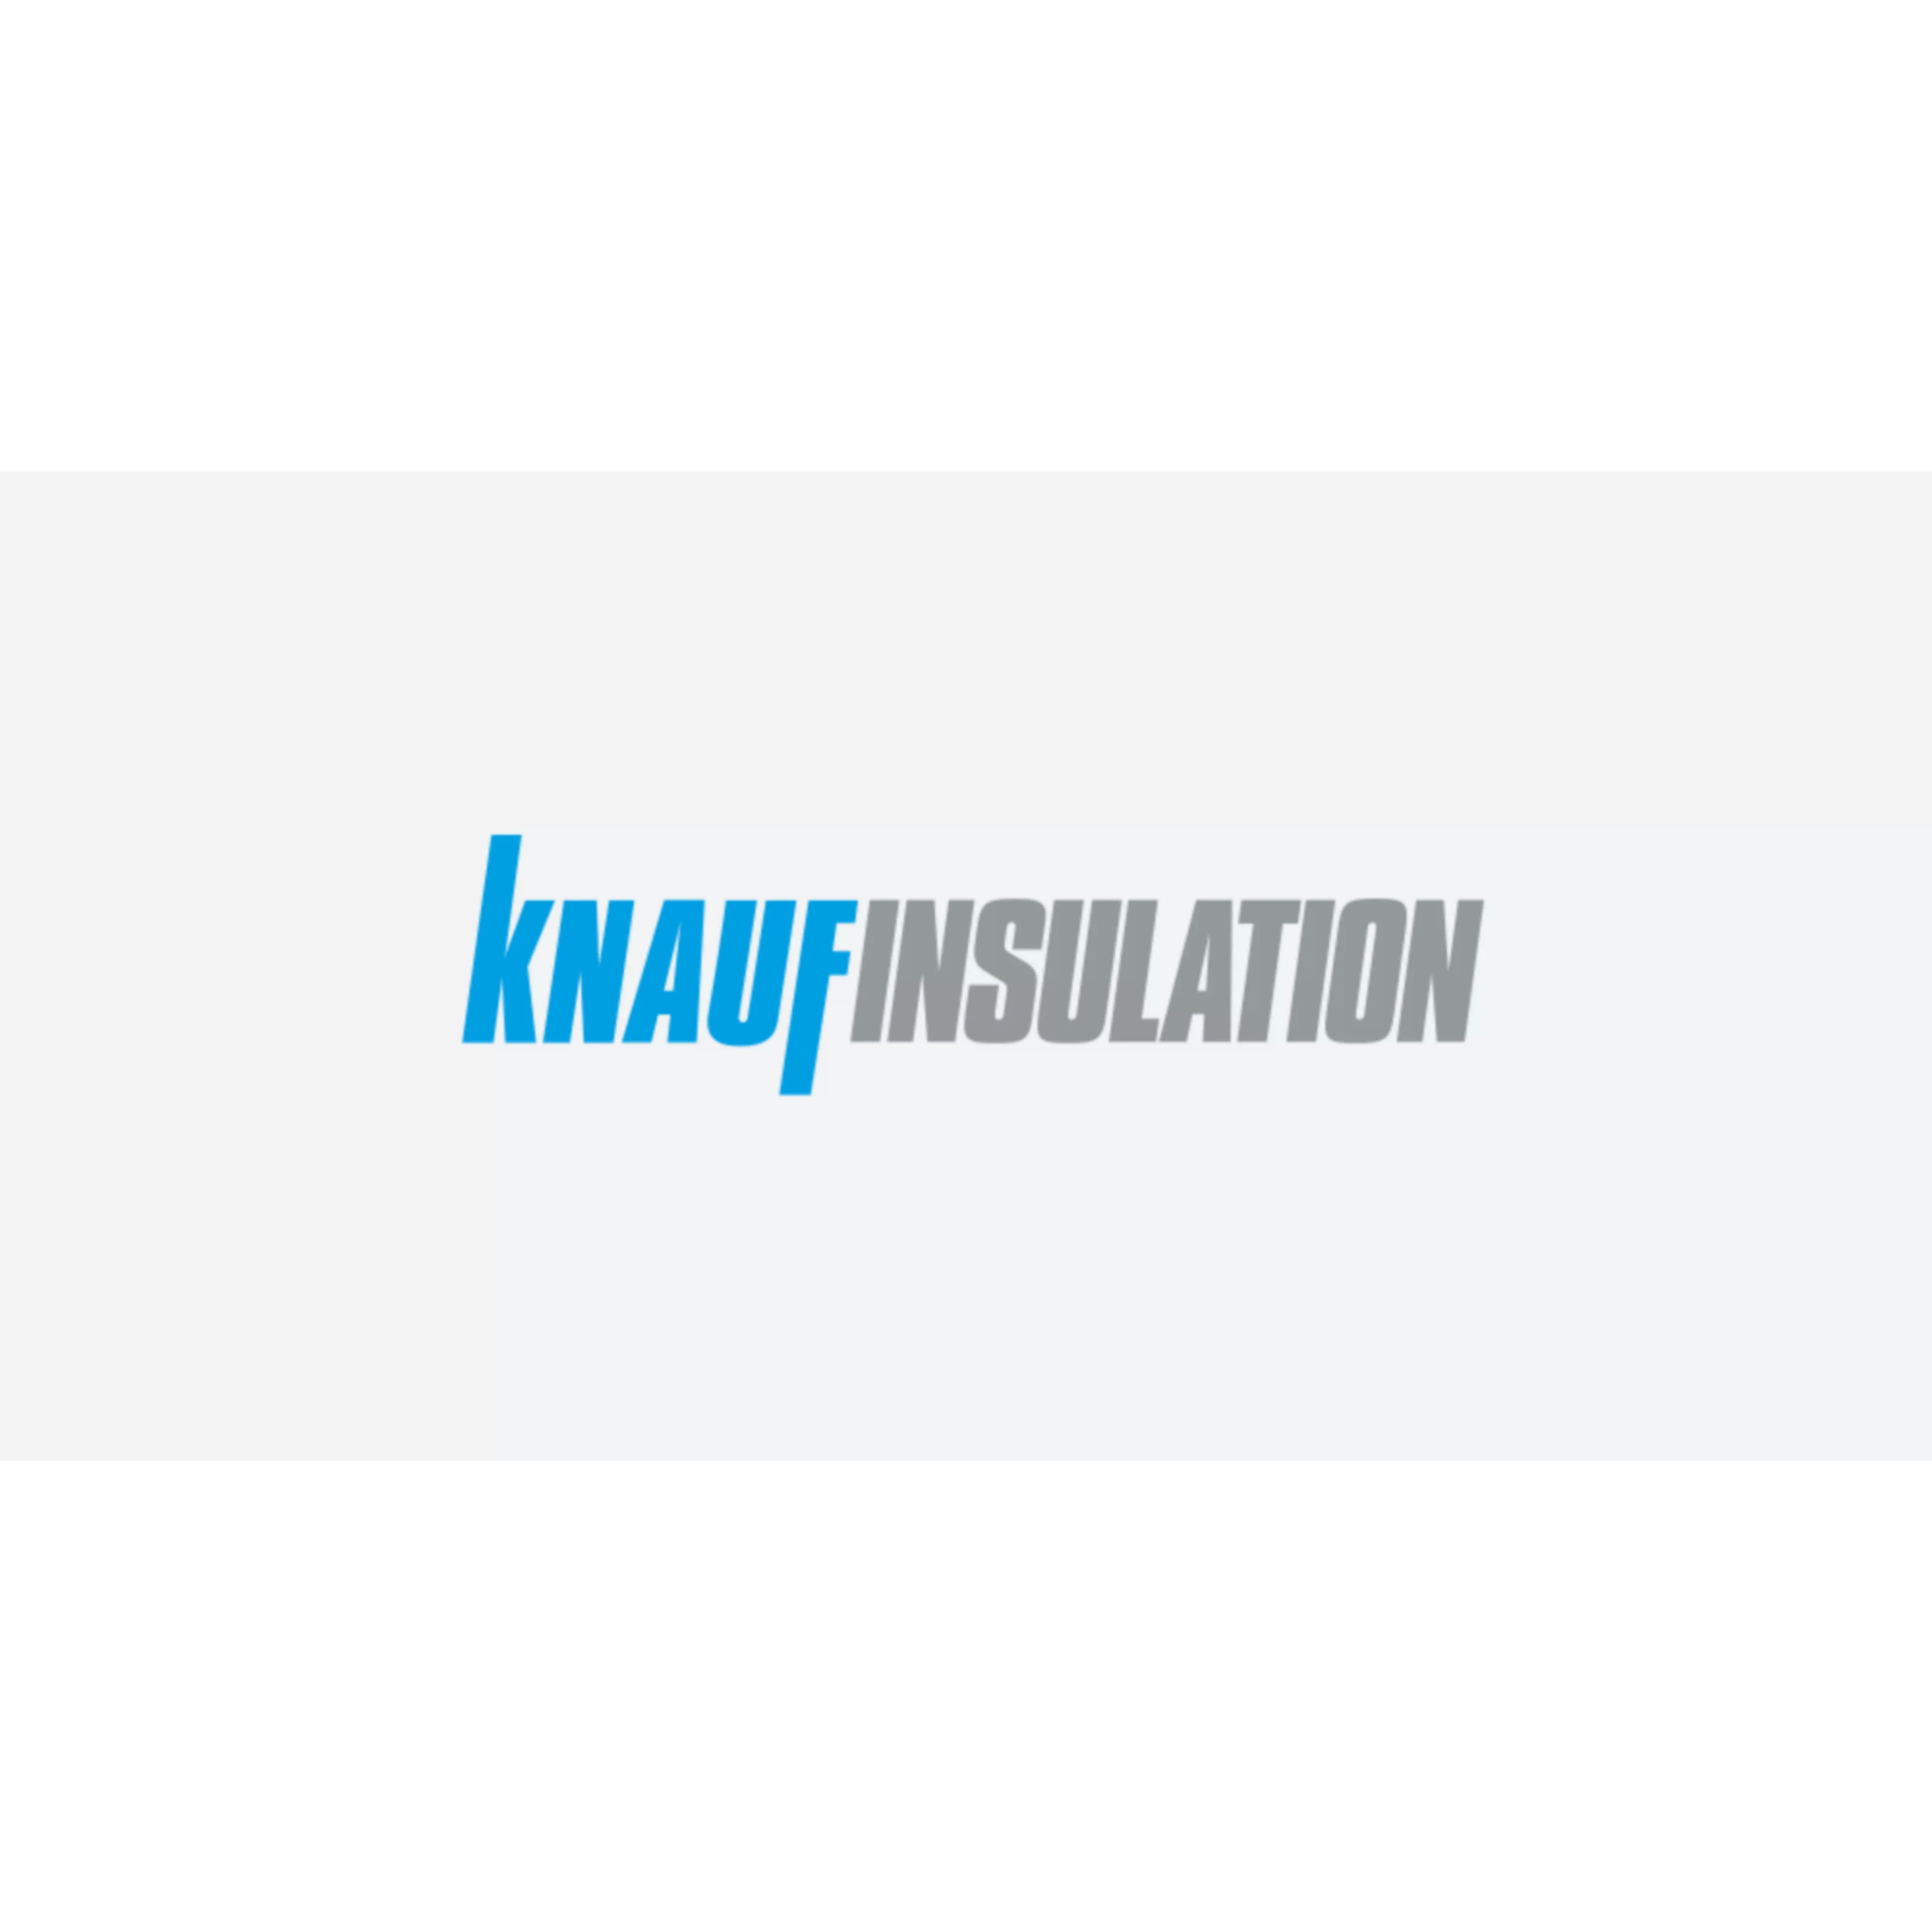 Knauf Partner logos